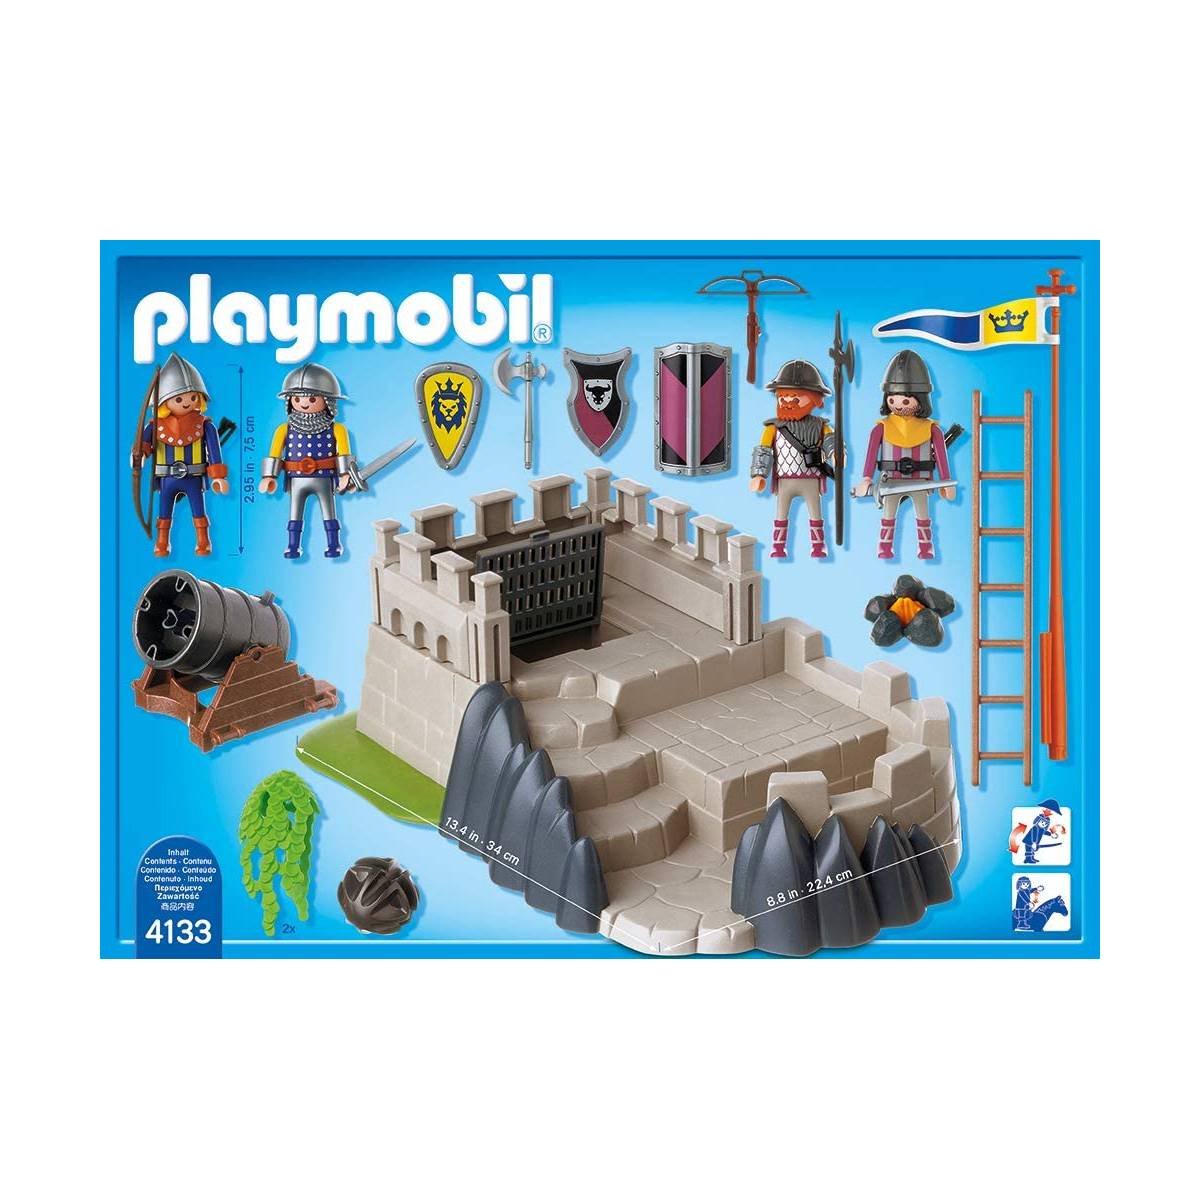 Chevalier Playmobil - Merveille & bout de chandelle